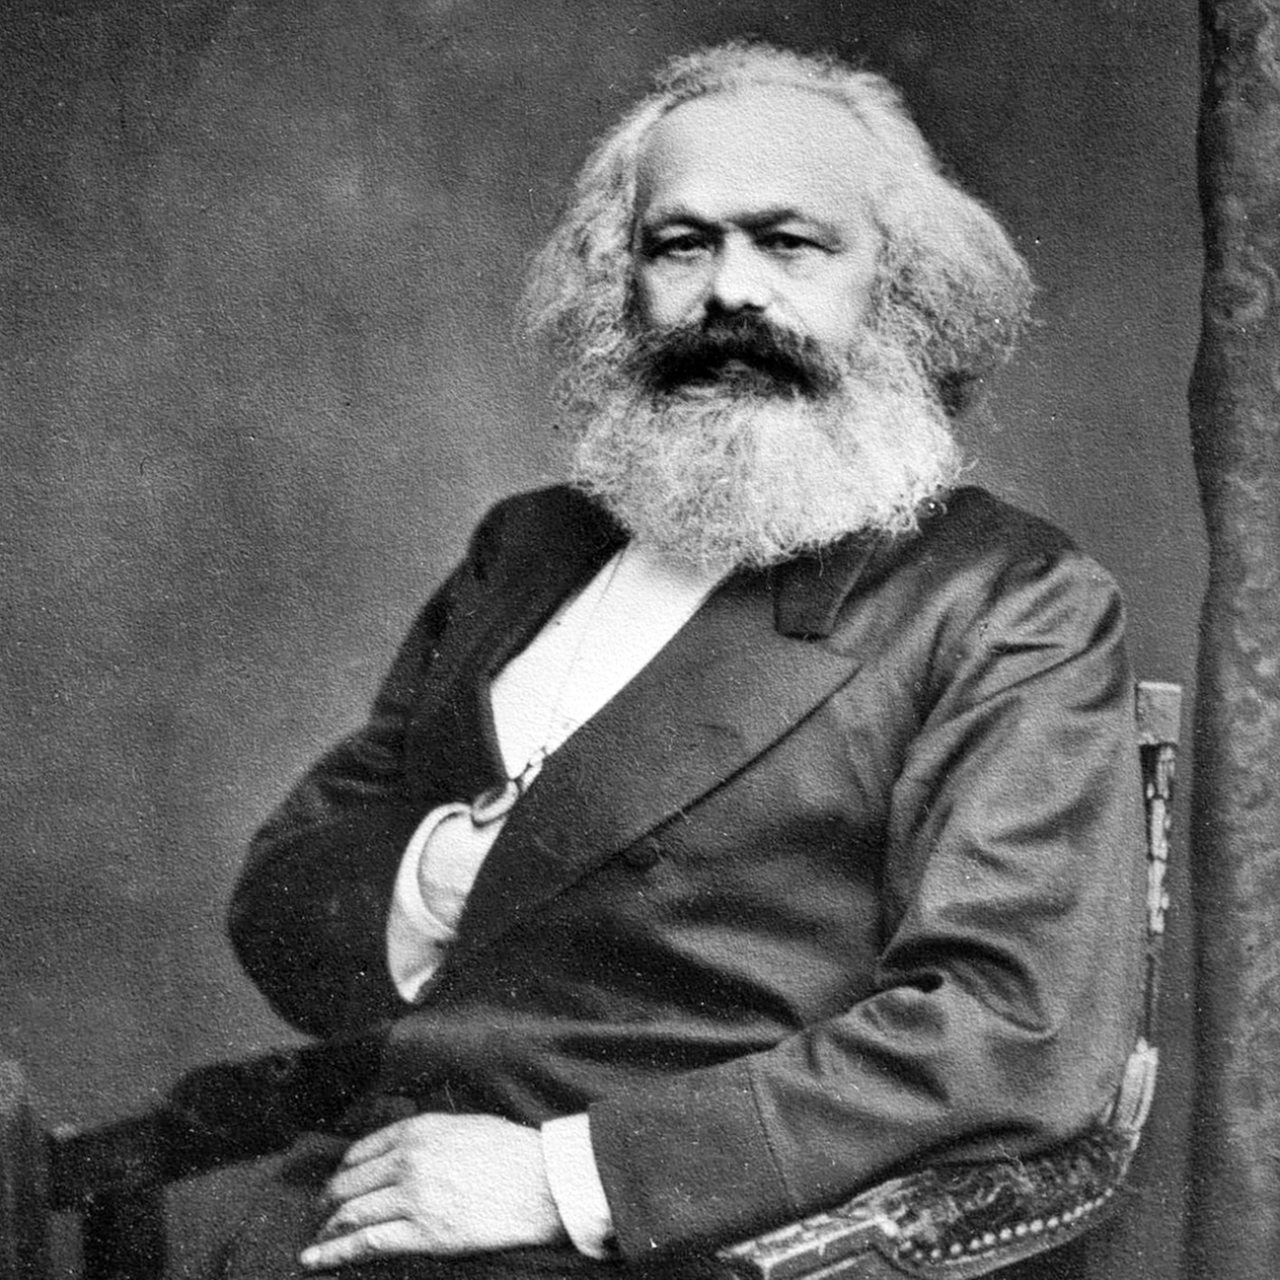 Karl Marx auf einer zeitgenössischen Fotografie